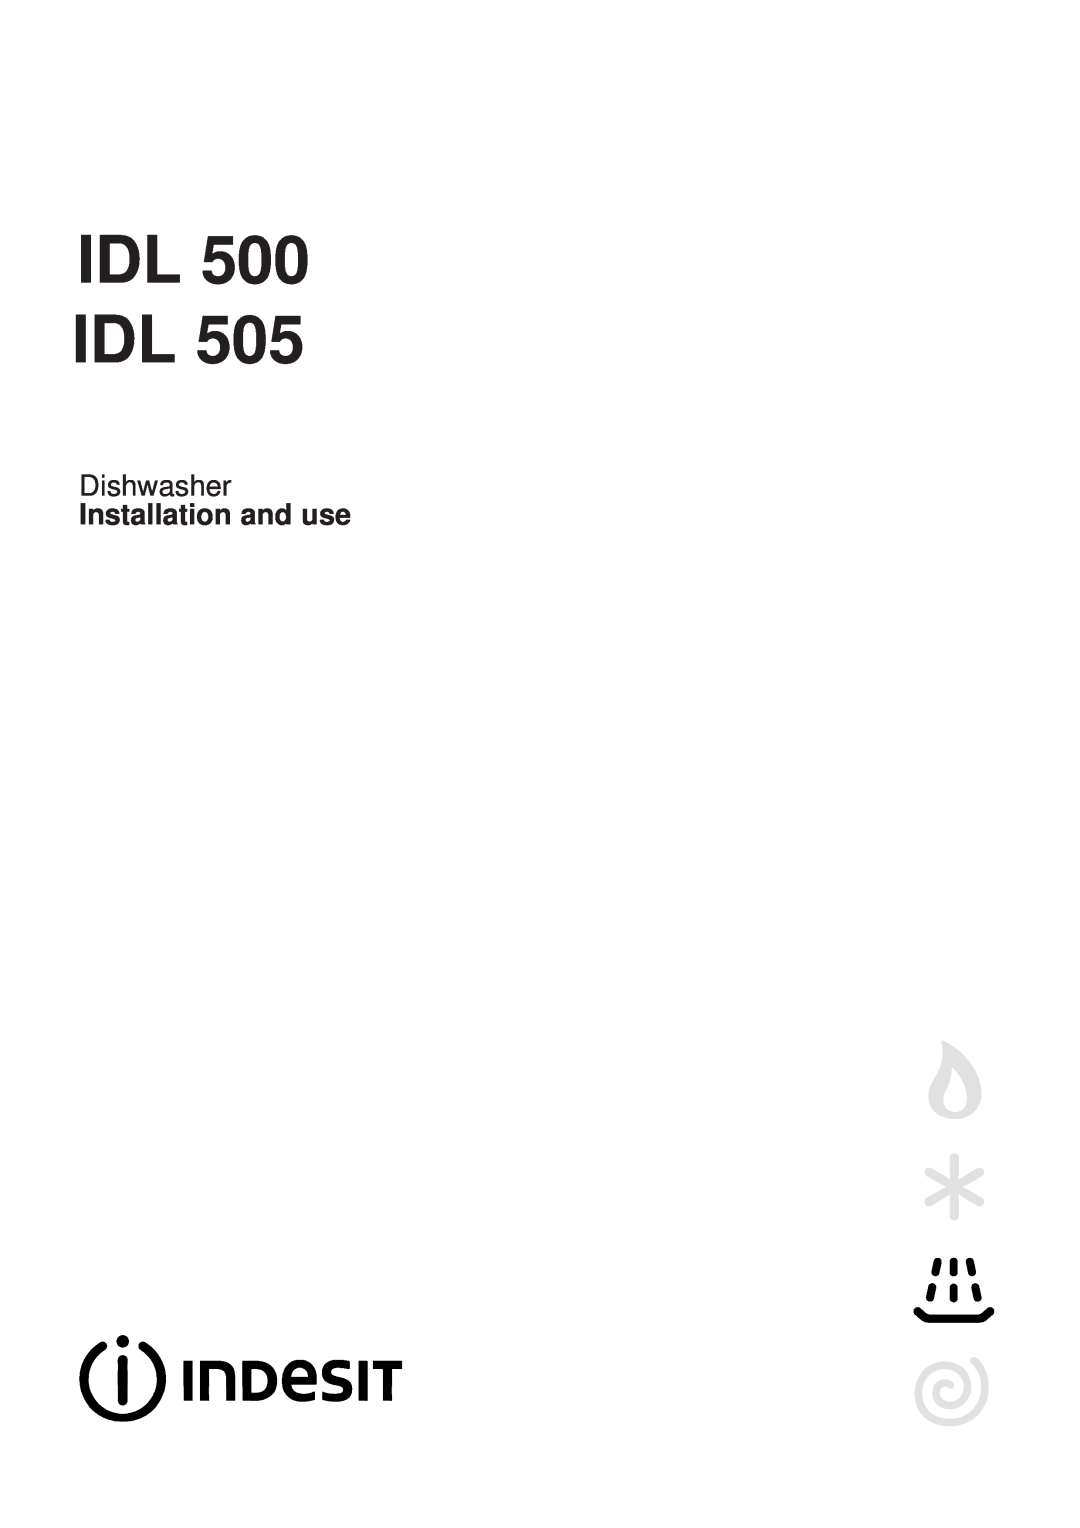 Indesit IDL 505 manual IDL 500 IDL, Dishwasher, Installation and use 